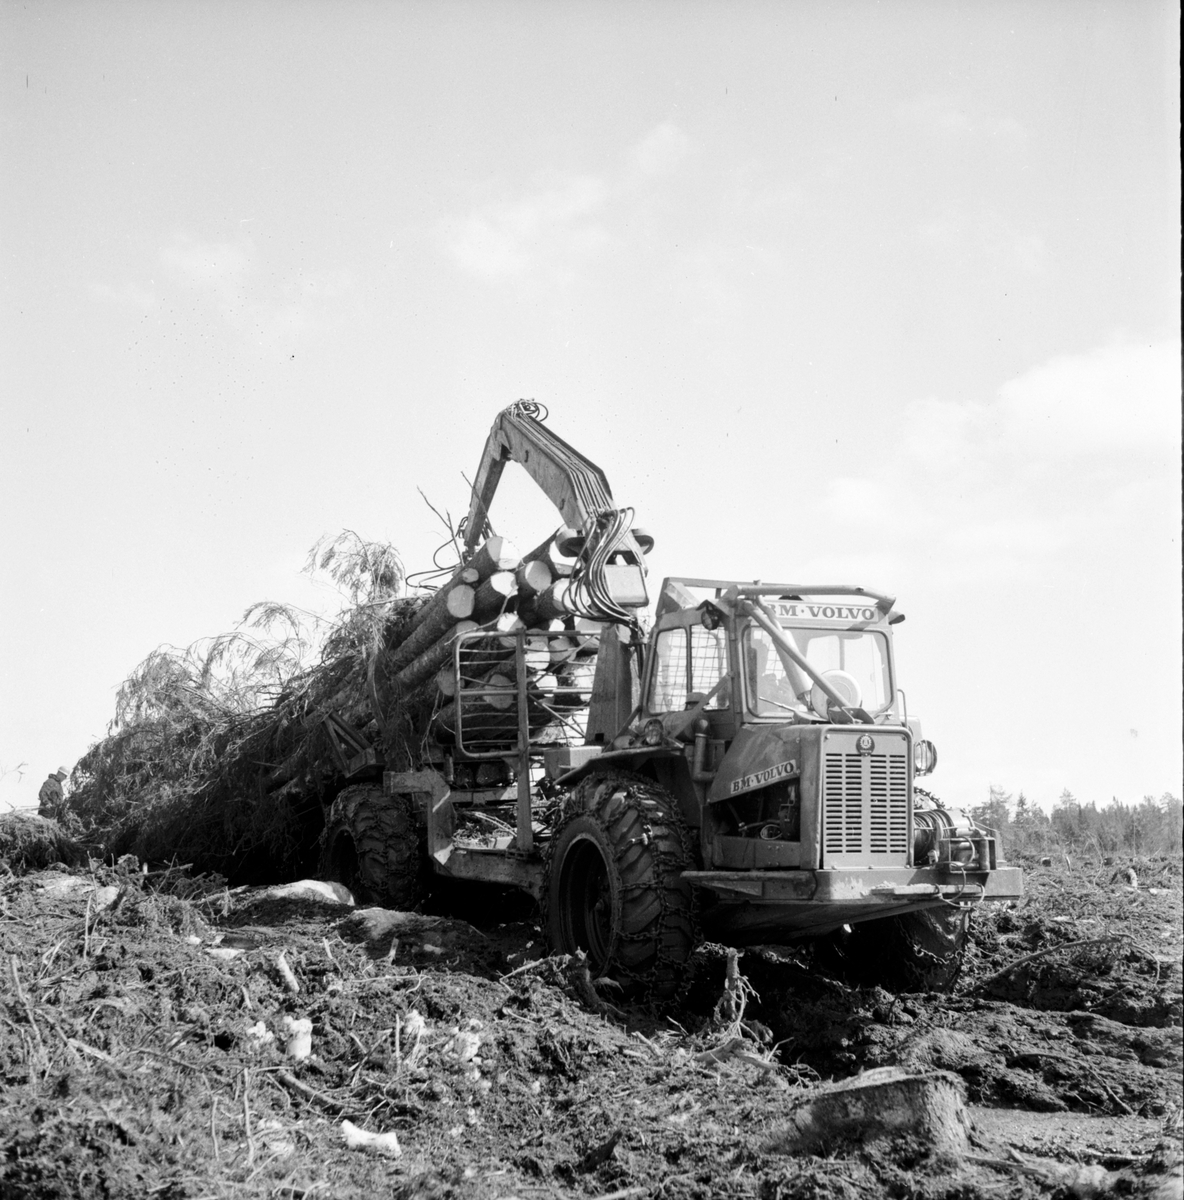 Svartnäs,
Skogsdrivning hos bergslaget demonstreras,
3 Maj 1969